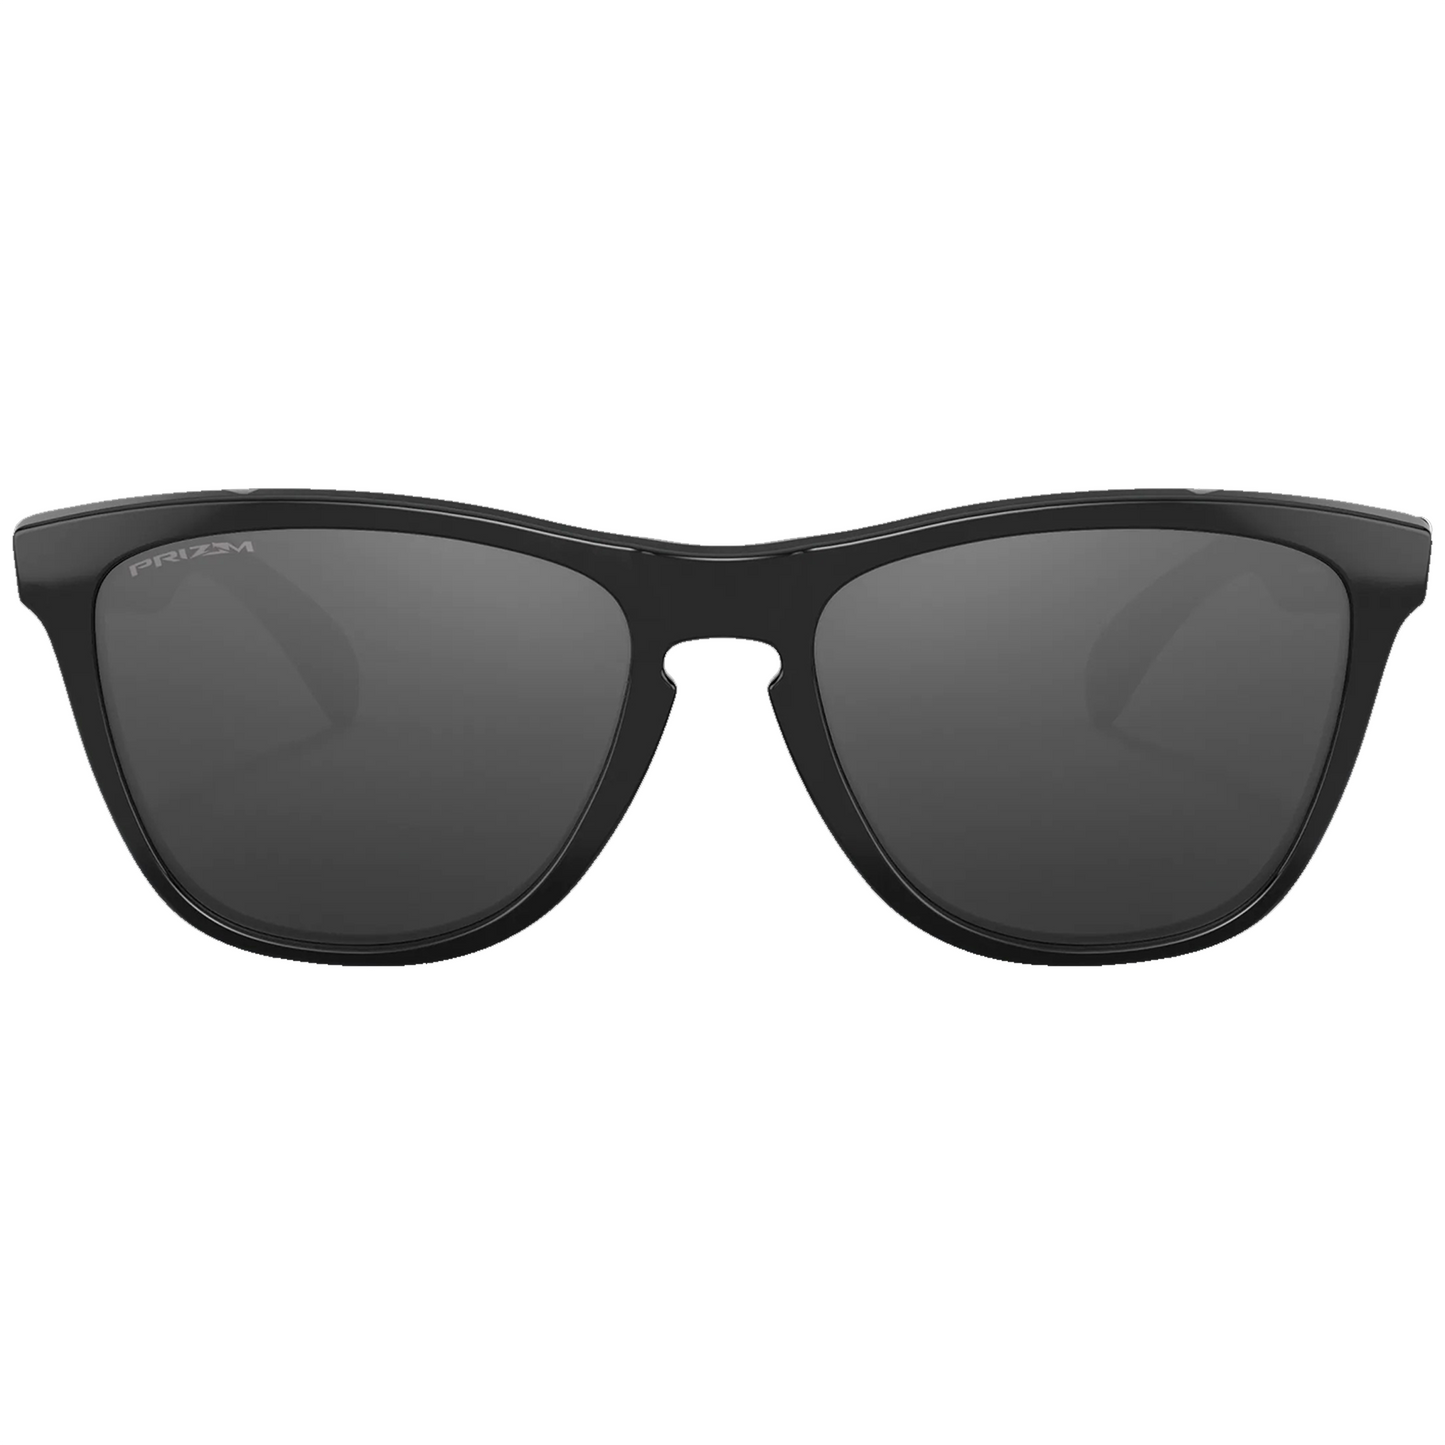 Oakley Frogskins Sunglasses (Polished Black) Prizm Black Lens - Free Case